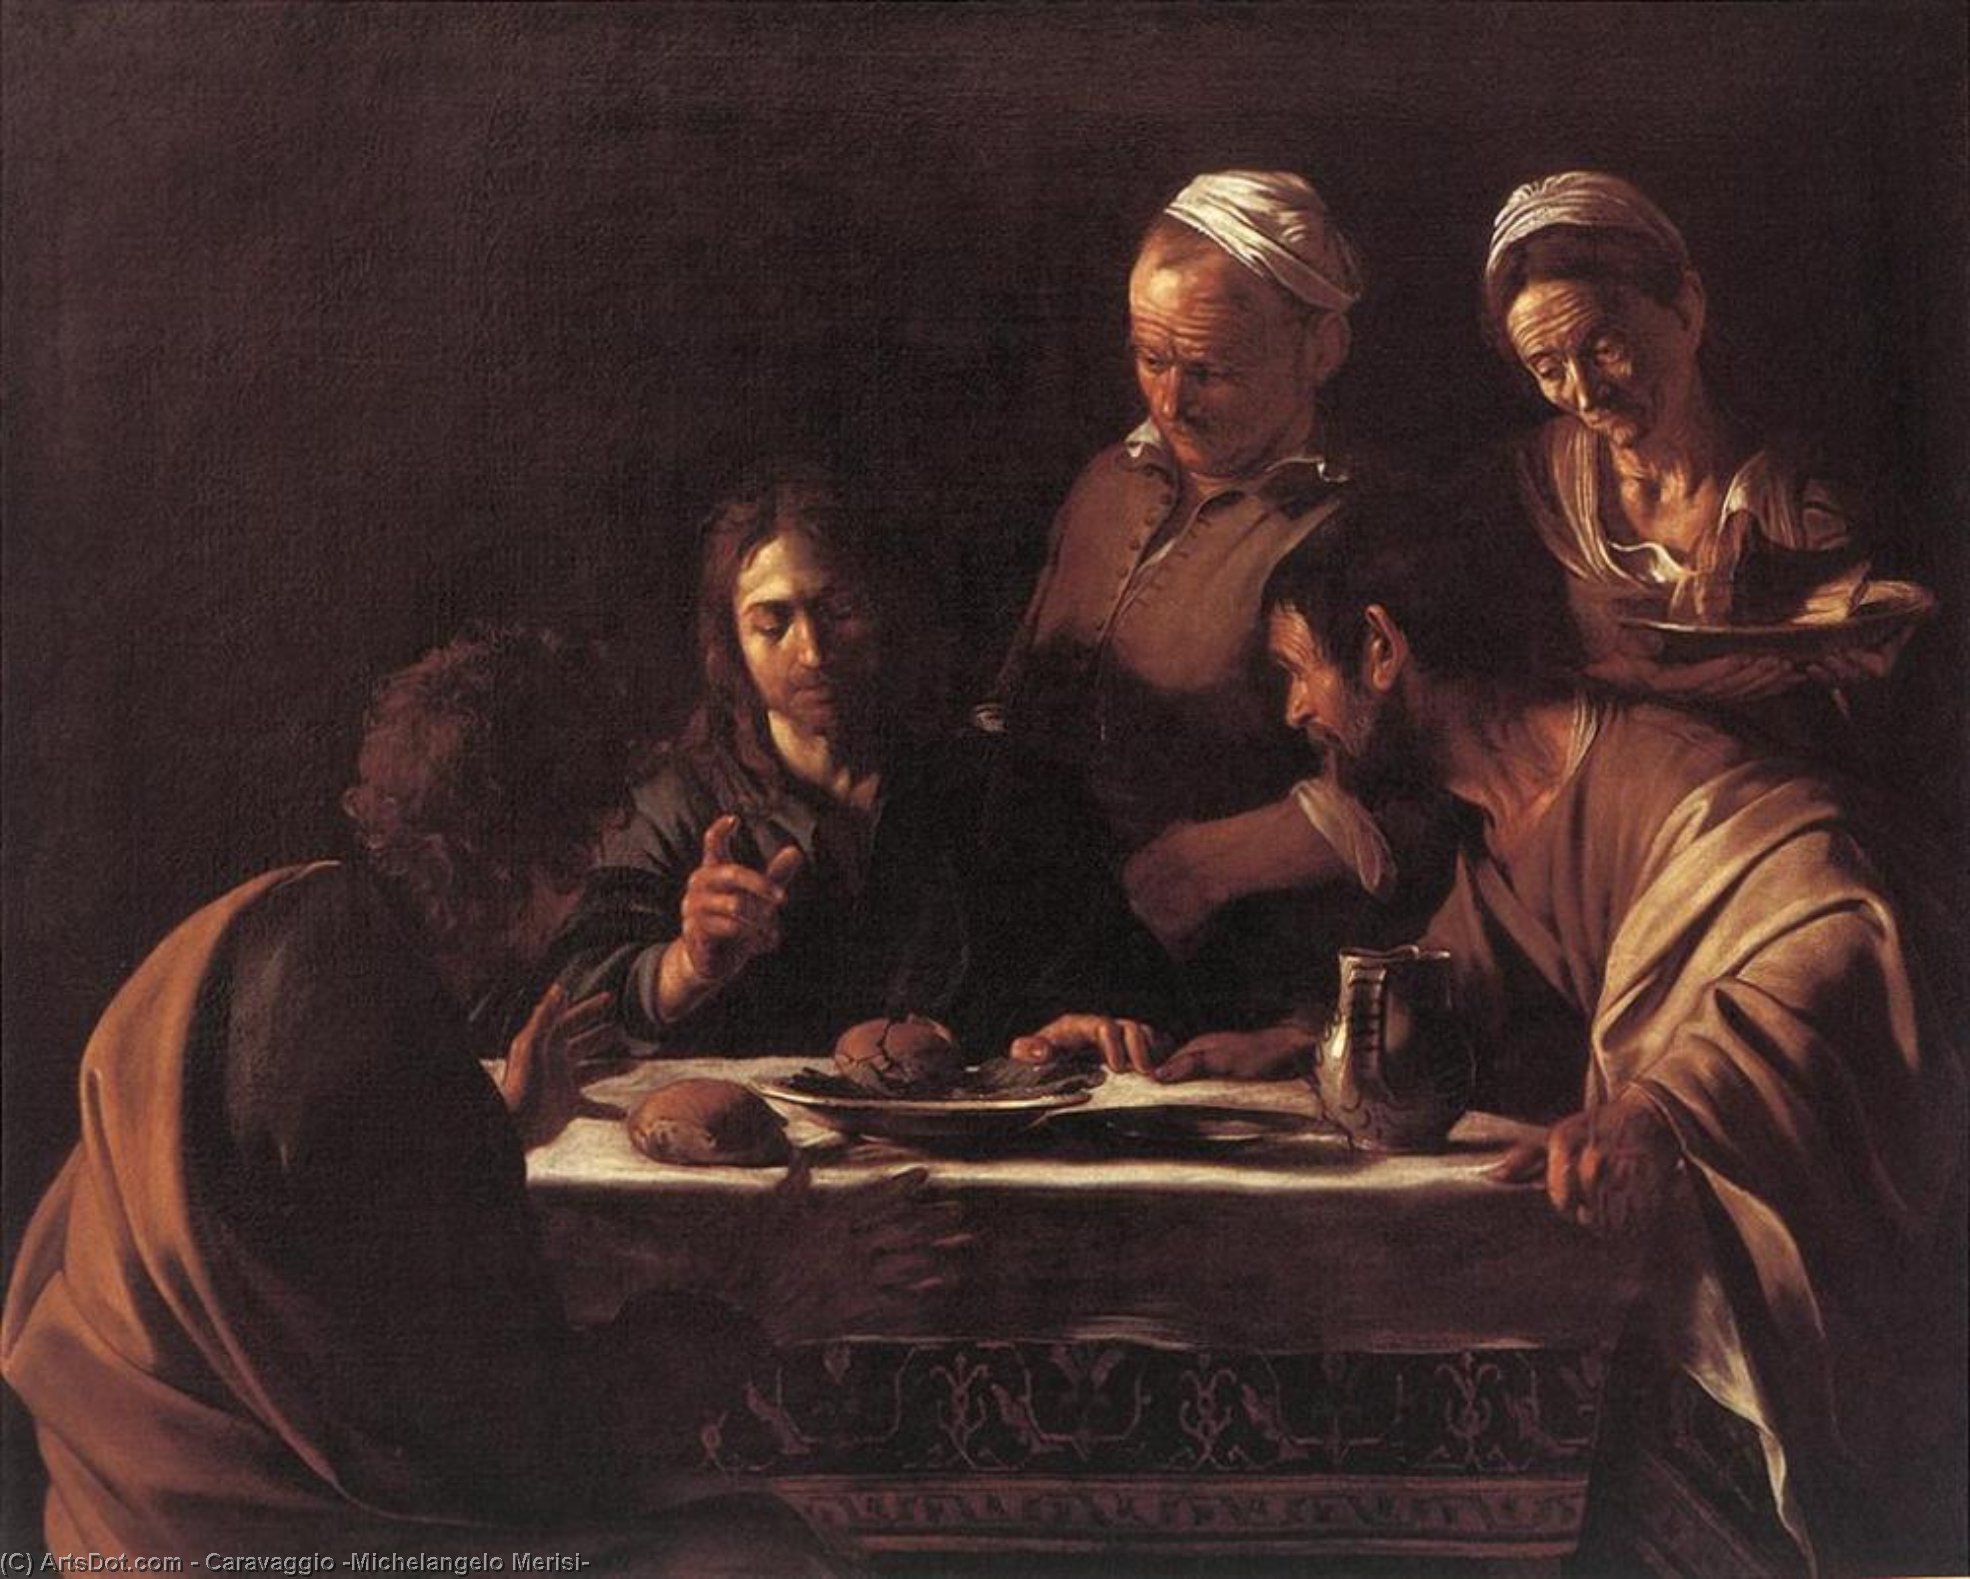 WikiOO.org - Encyclopedia of Fine Arts - Målning, konstverk Caravaggio (Michelangelo Merisi) - Supper at Emmaus